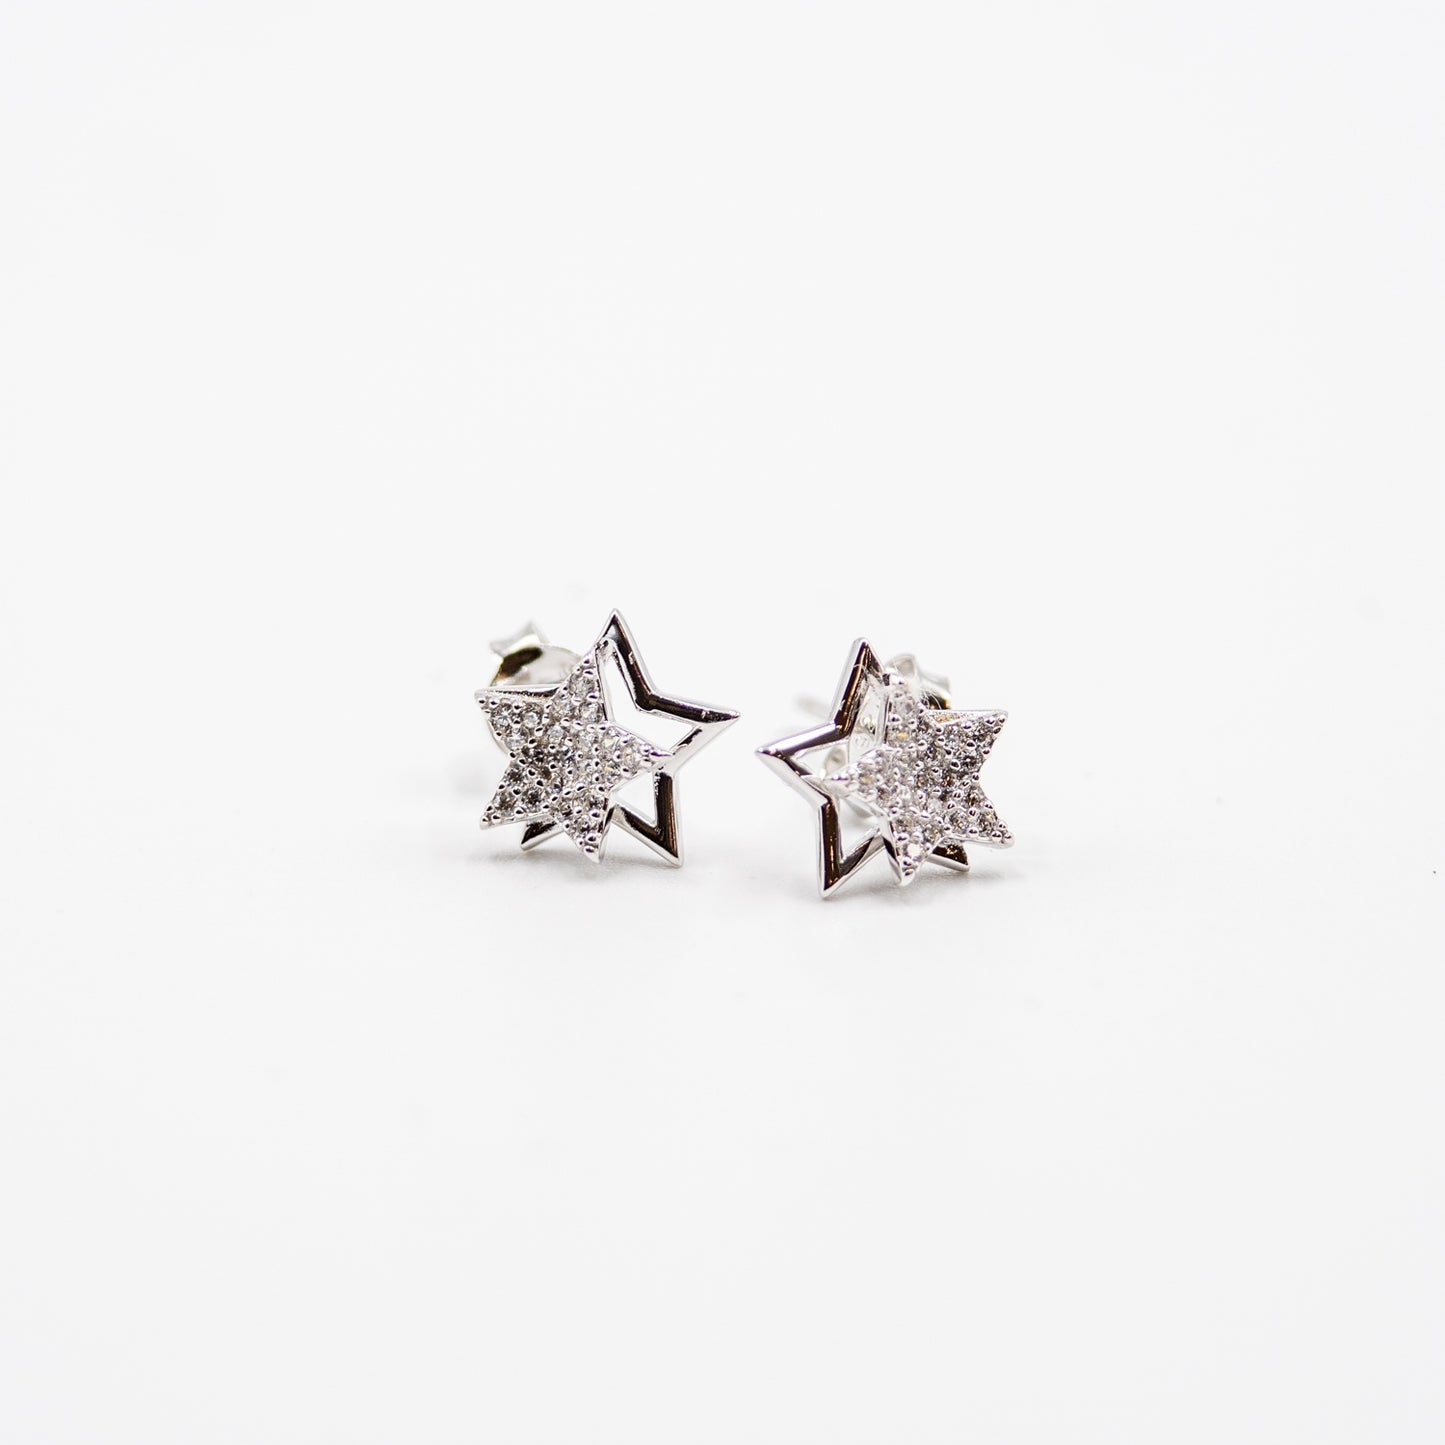 DK-925-200 sterling silver earrings